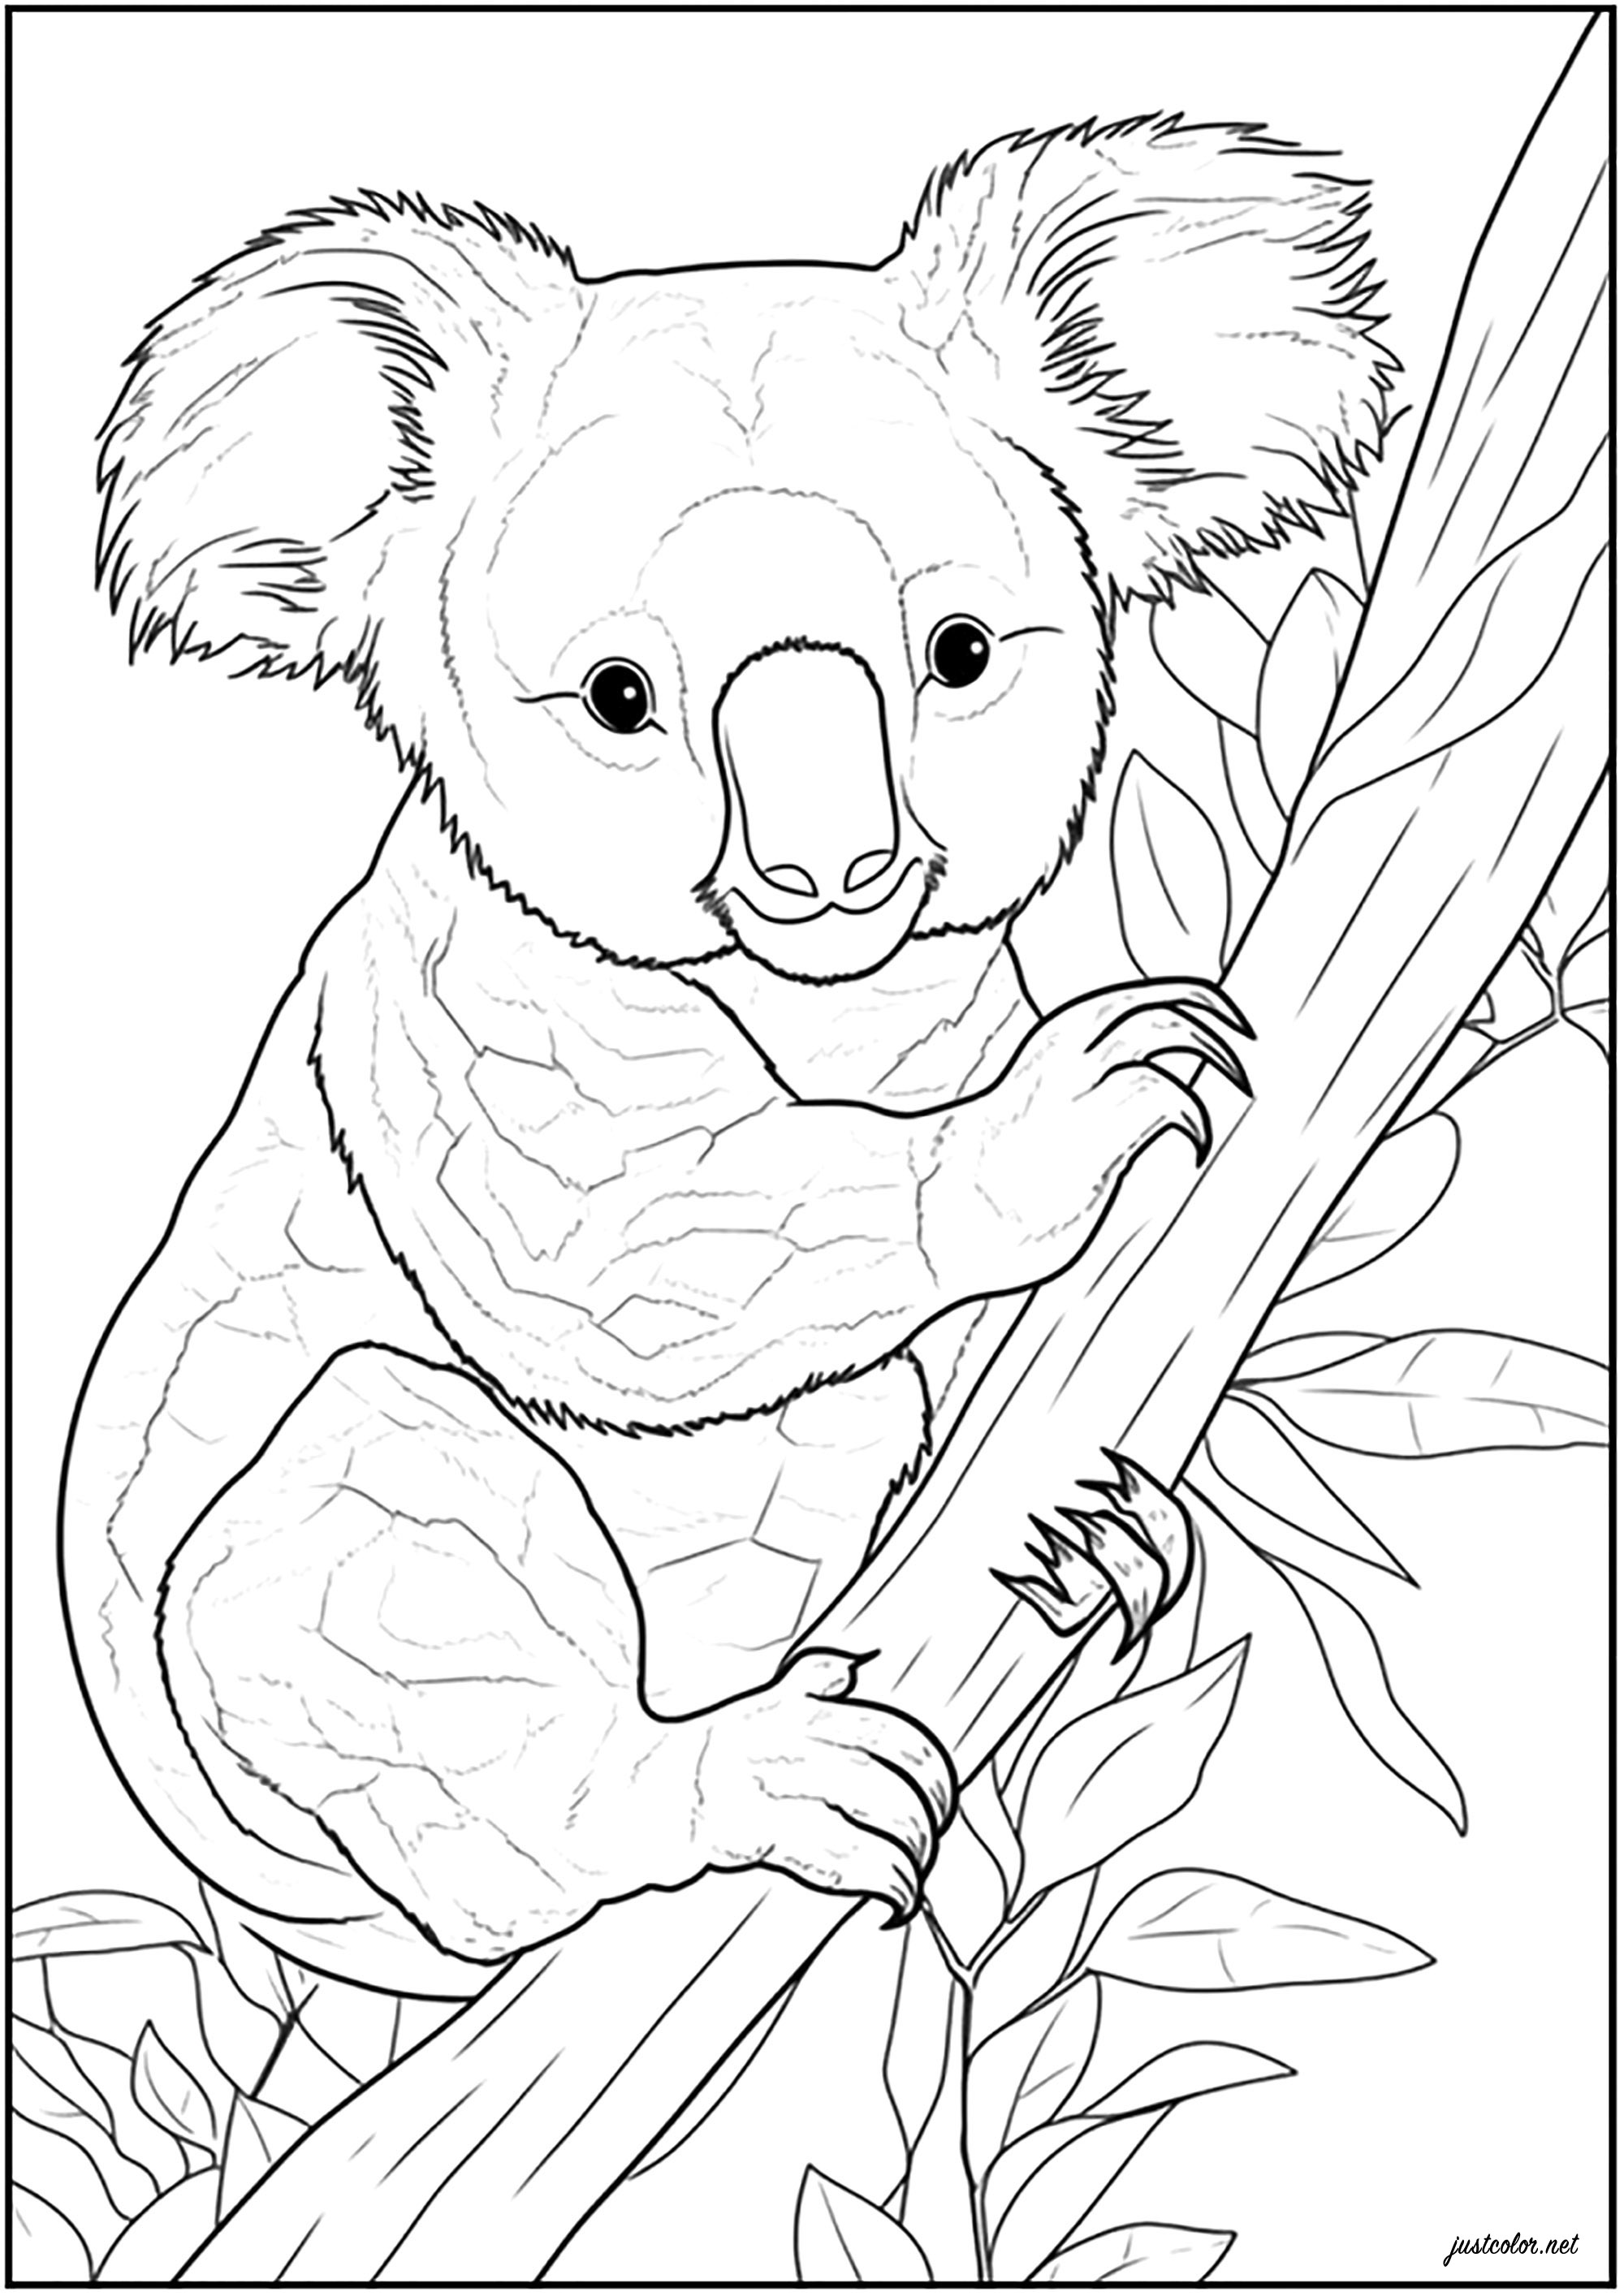 Cute, realistic Koala - Koalas Kids Coloring Pages